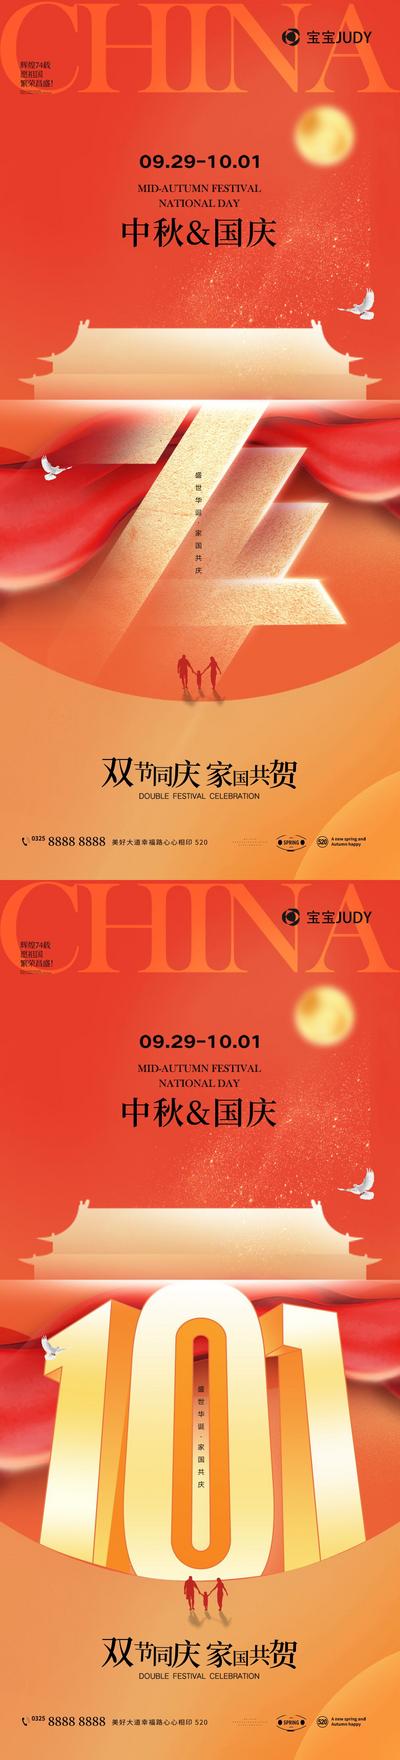 南门网 海报 地产 中国传统节日 中秋节 国庆节 74周年 101 数字